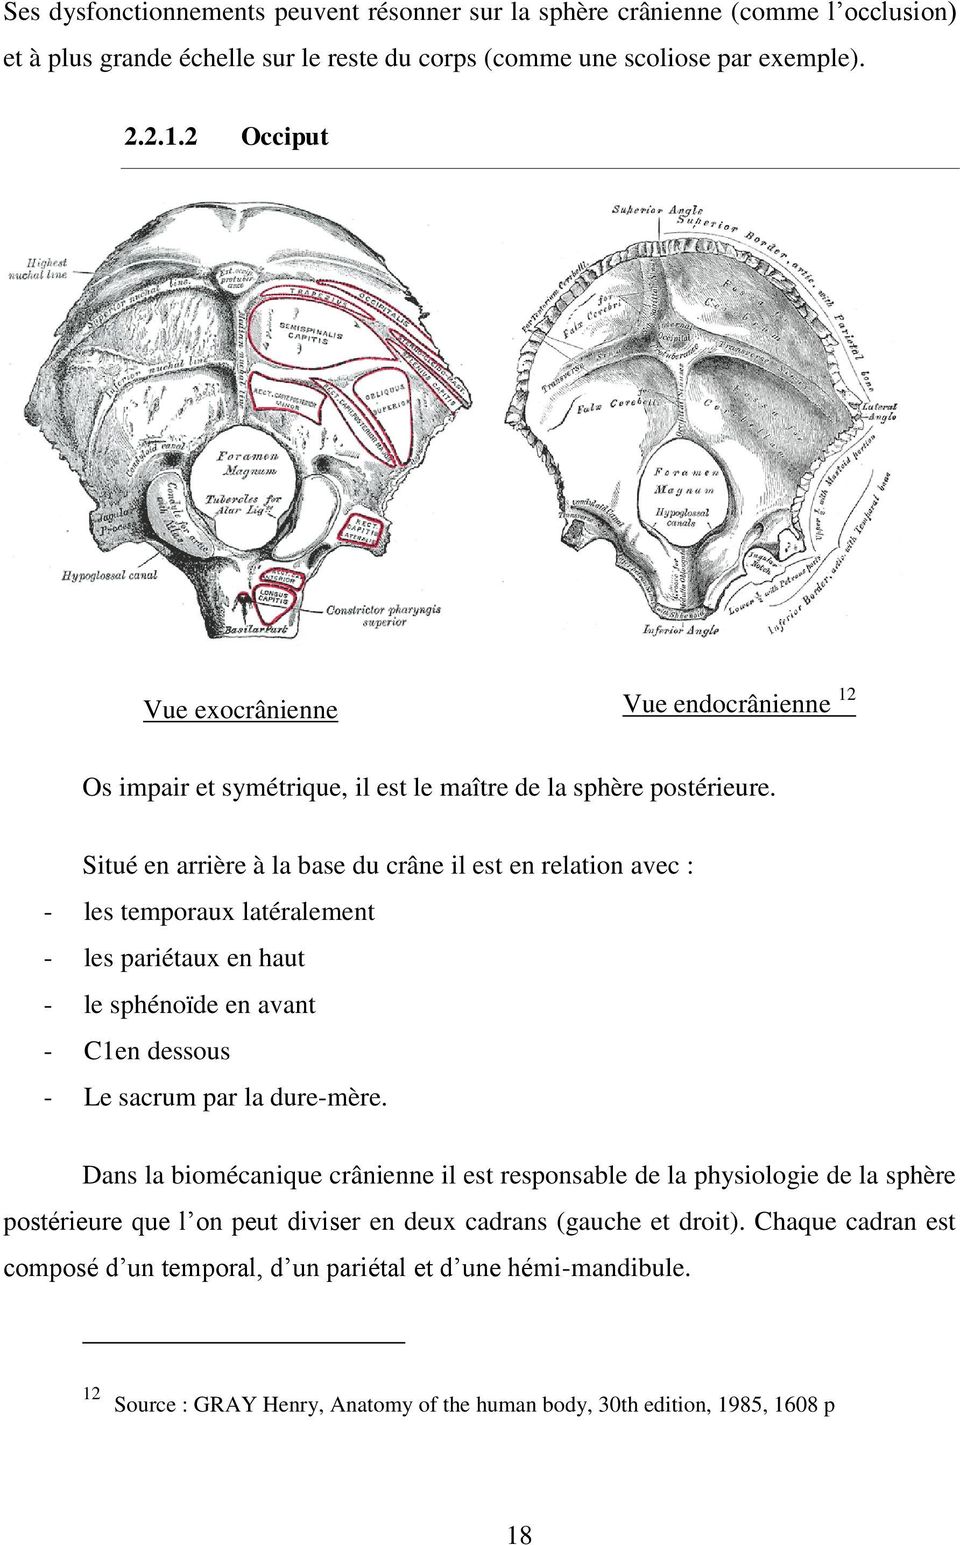 Situé en arrière à la base du crâne il est en relation avec : - les temporaux latéralement - les pariétaux en haut - le sphénoïde en avant - C1en dessous - Le sacrum par la dure-mère.